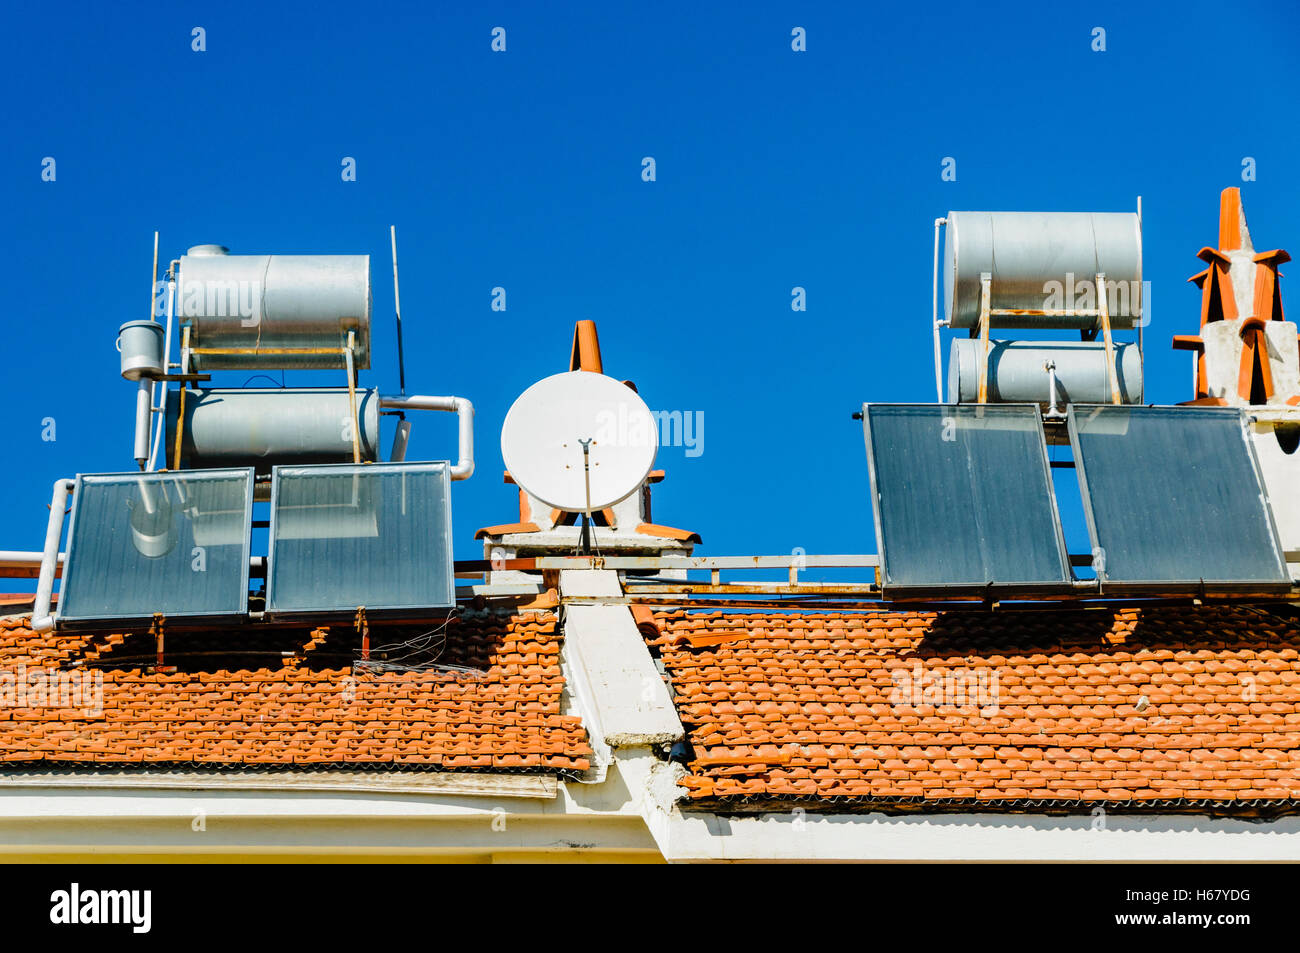 Solare Wasser-heizungen und Satellitenschüsseln auf dem Dach eines Gebäudes in einem heißen Klima Stockfoto